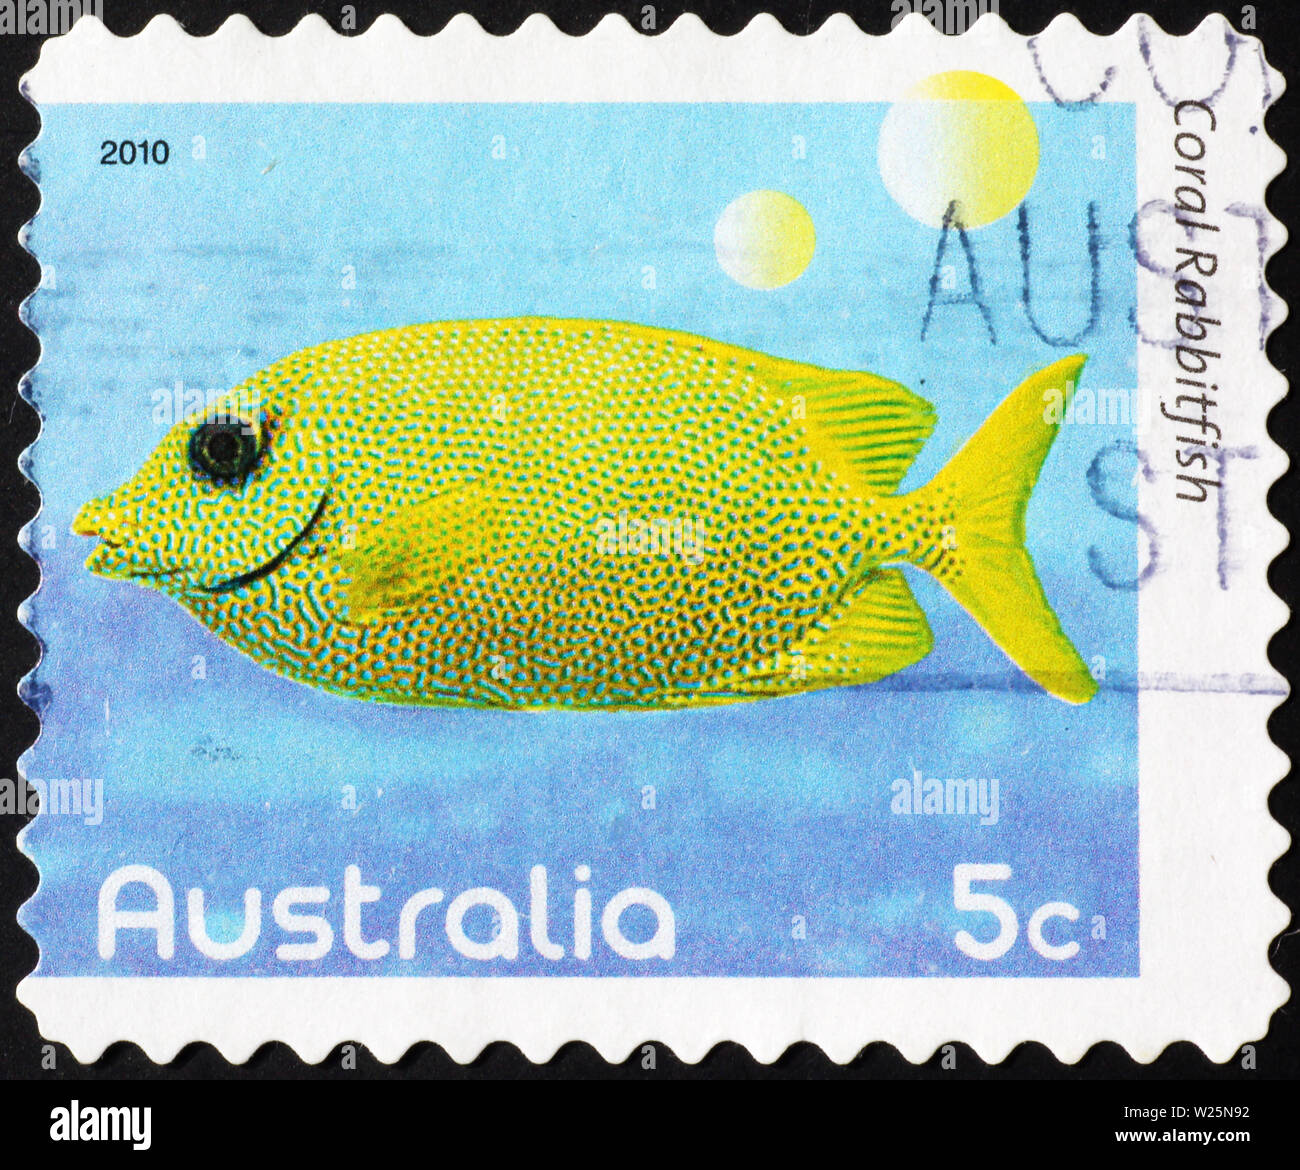 Poisson jaune tropical sur timbre australien Banque D'Images